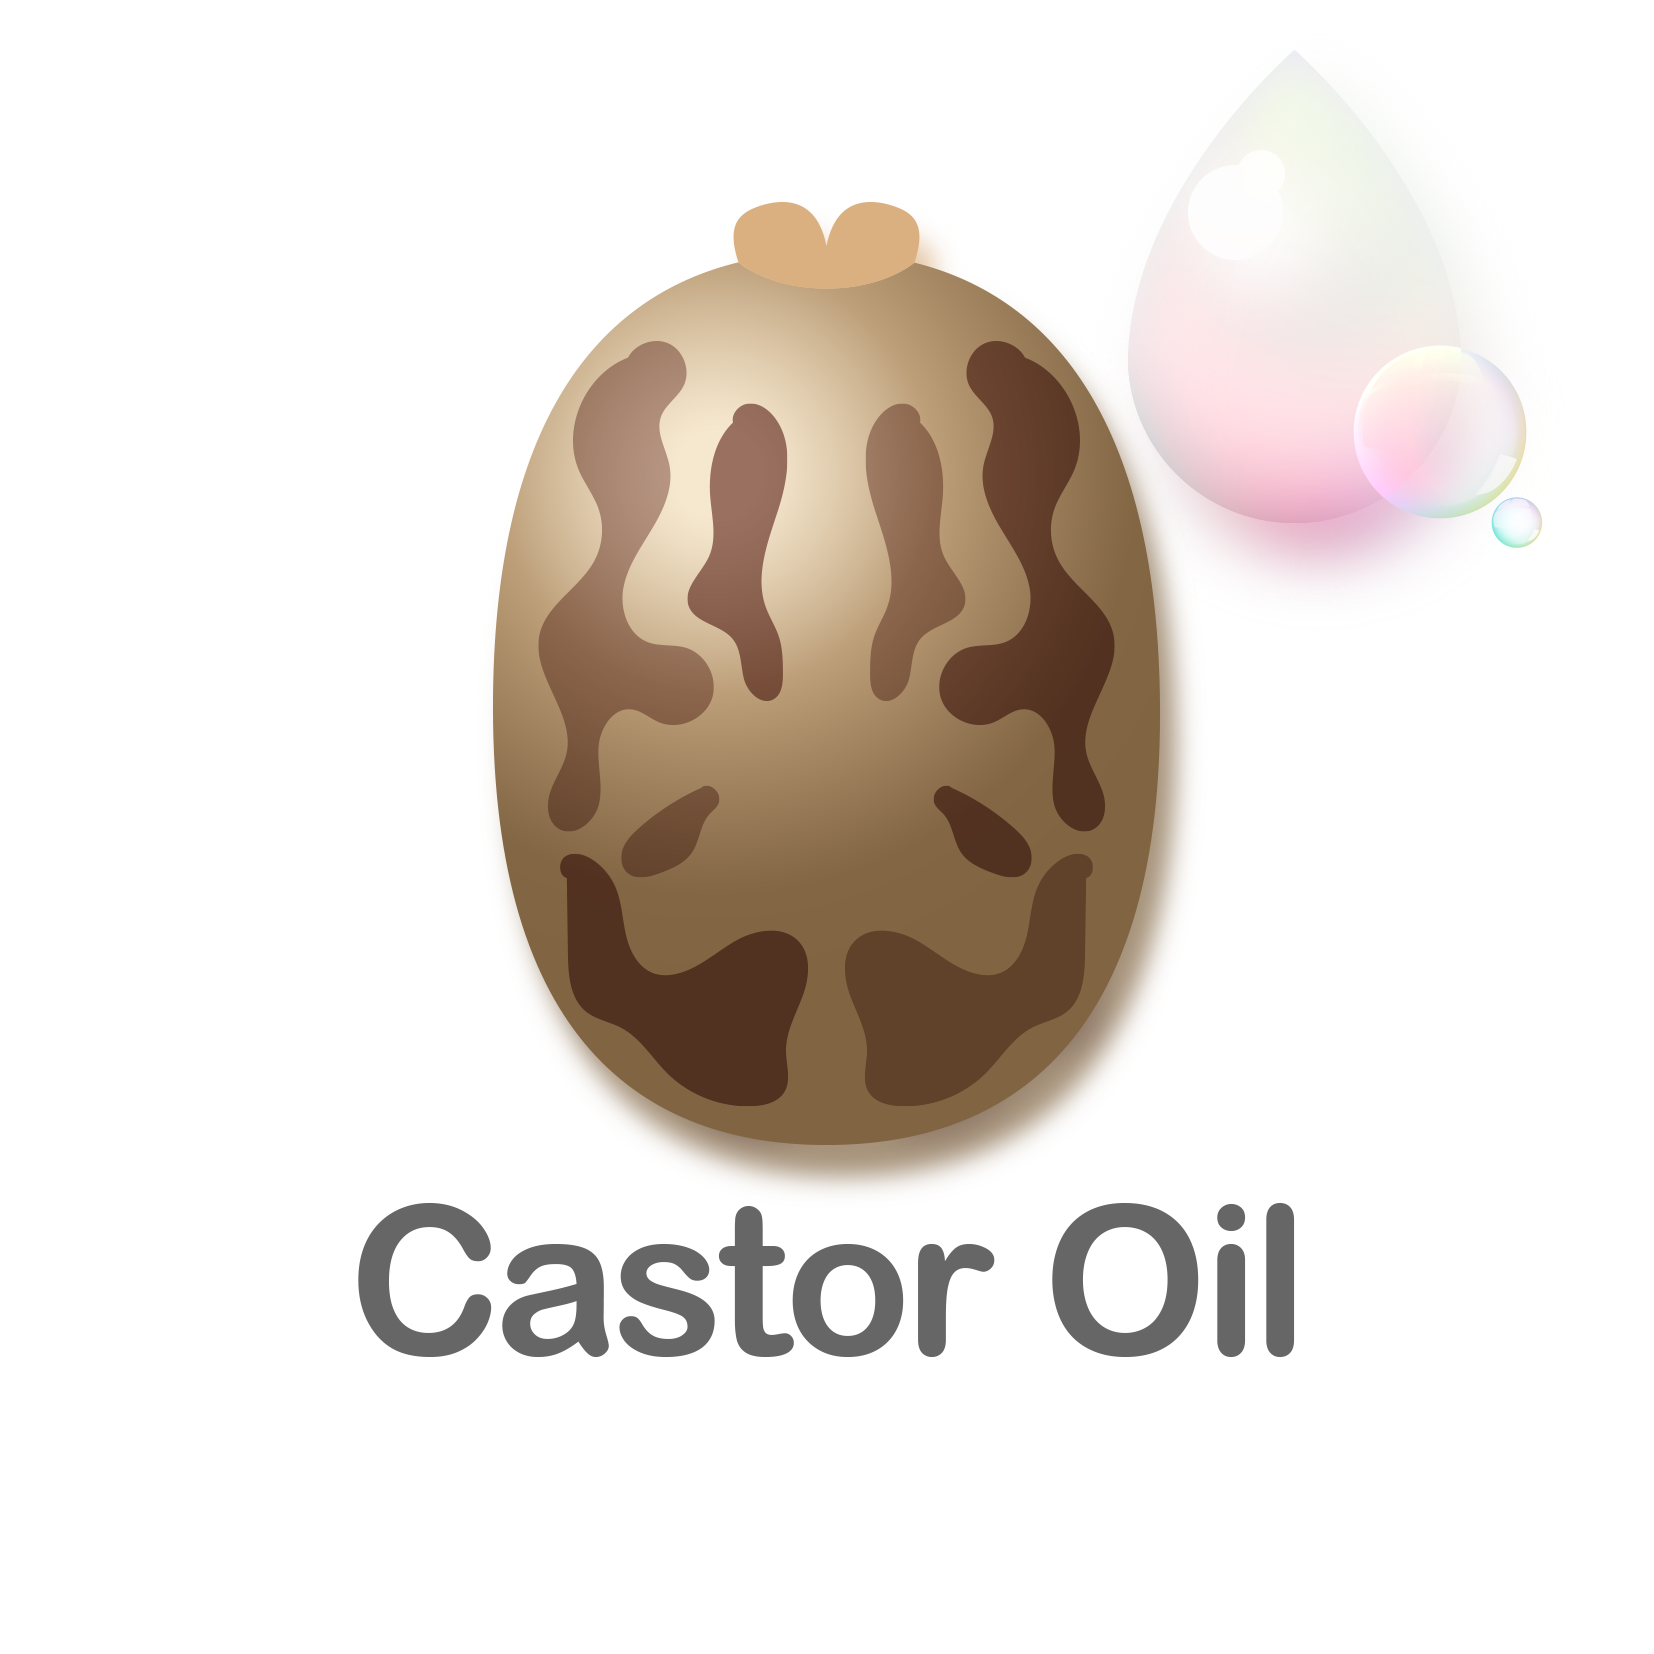 Castor Oil (Copy) (Copy)